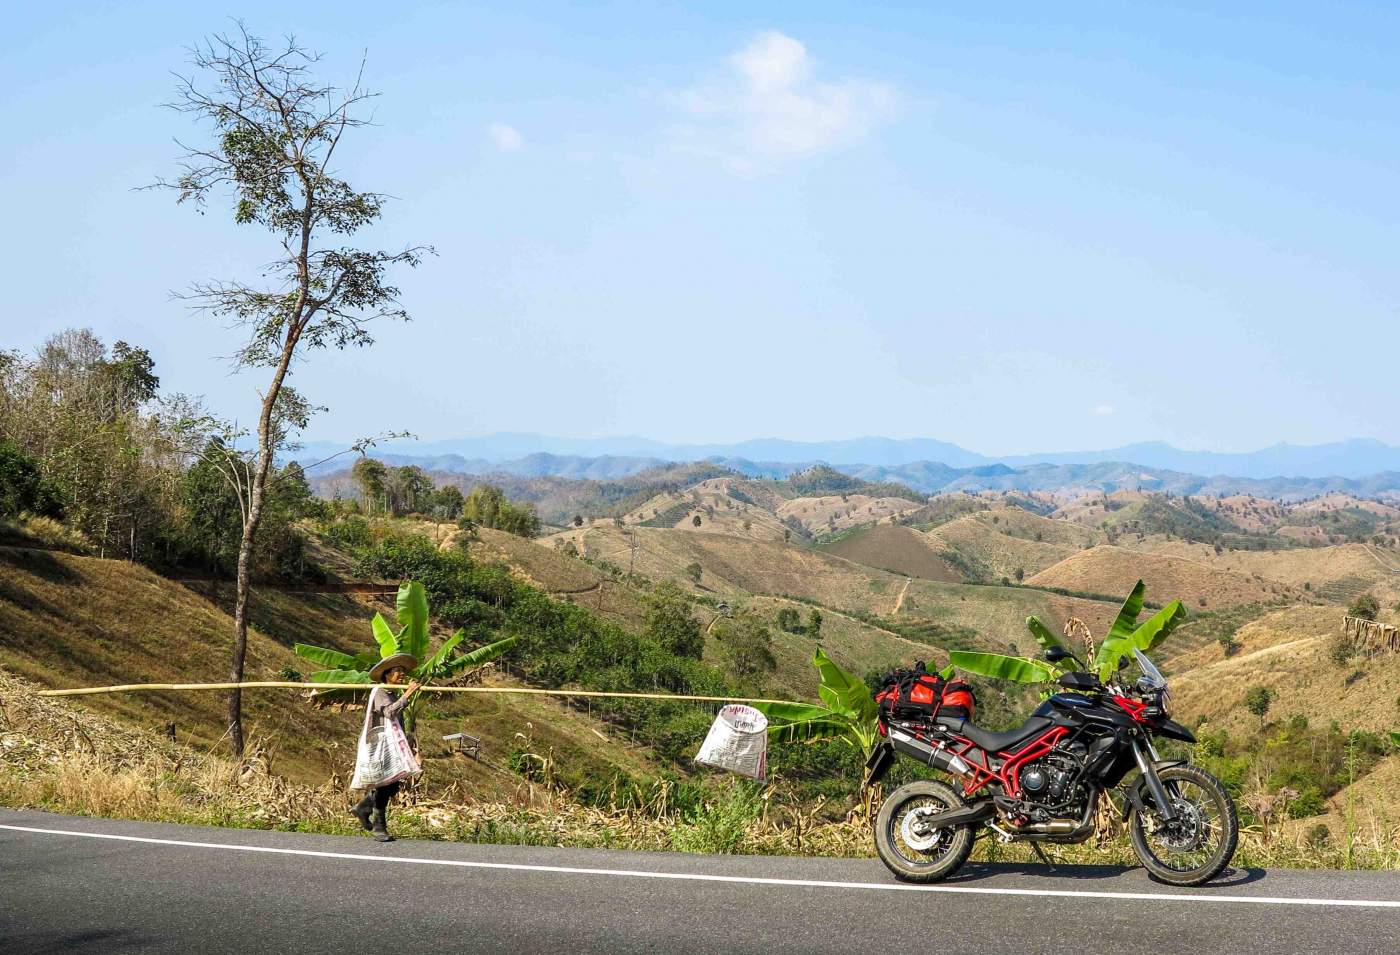  Blick auf ein Kawasaki Motorrad und auf die thailändischen Highlands 